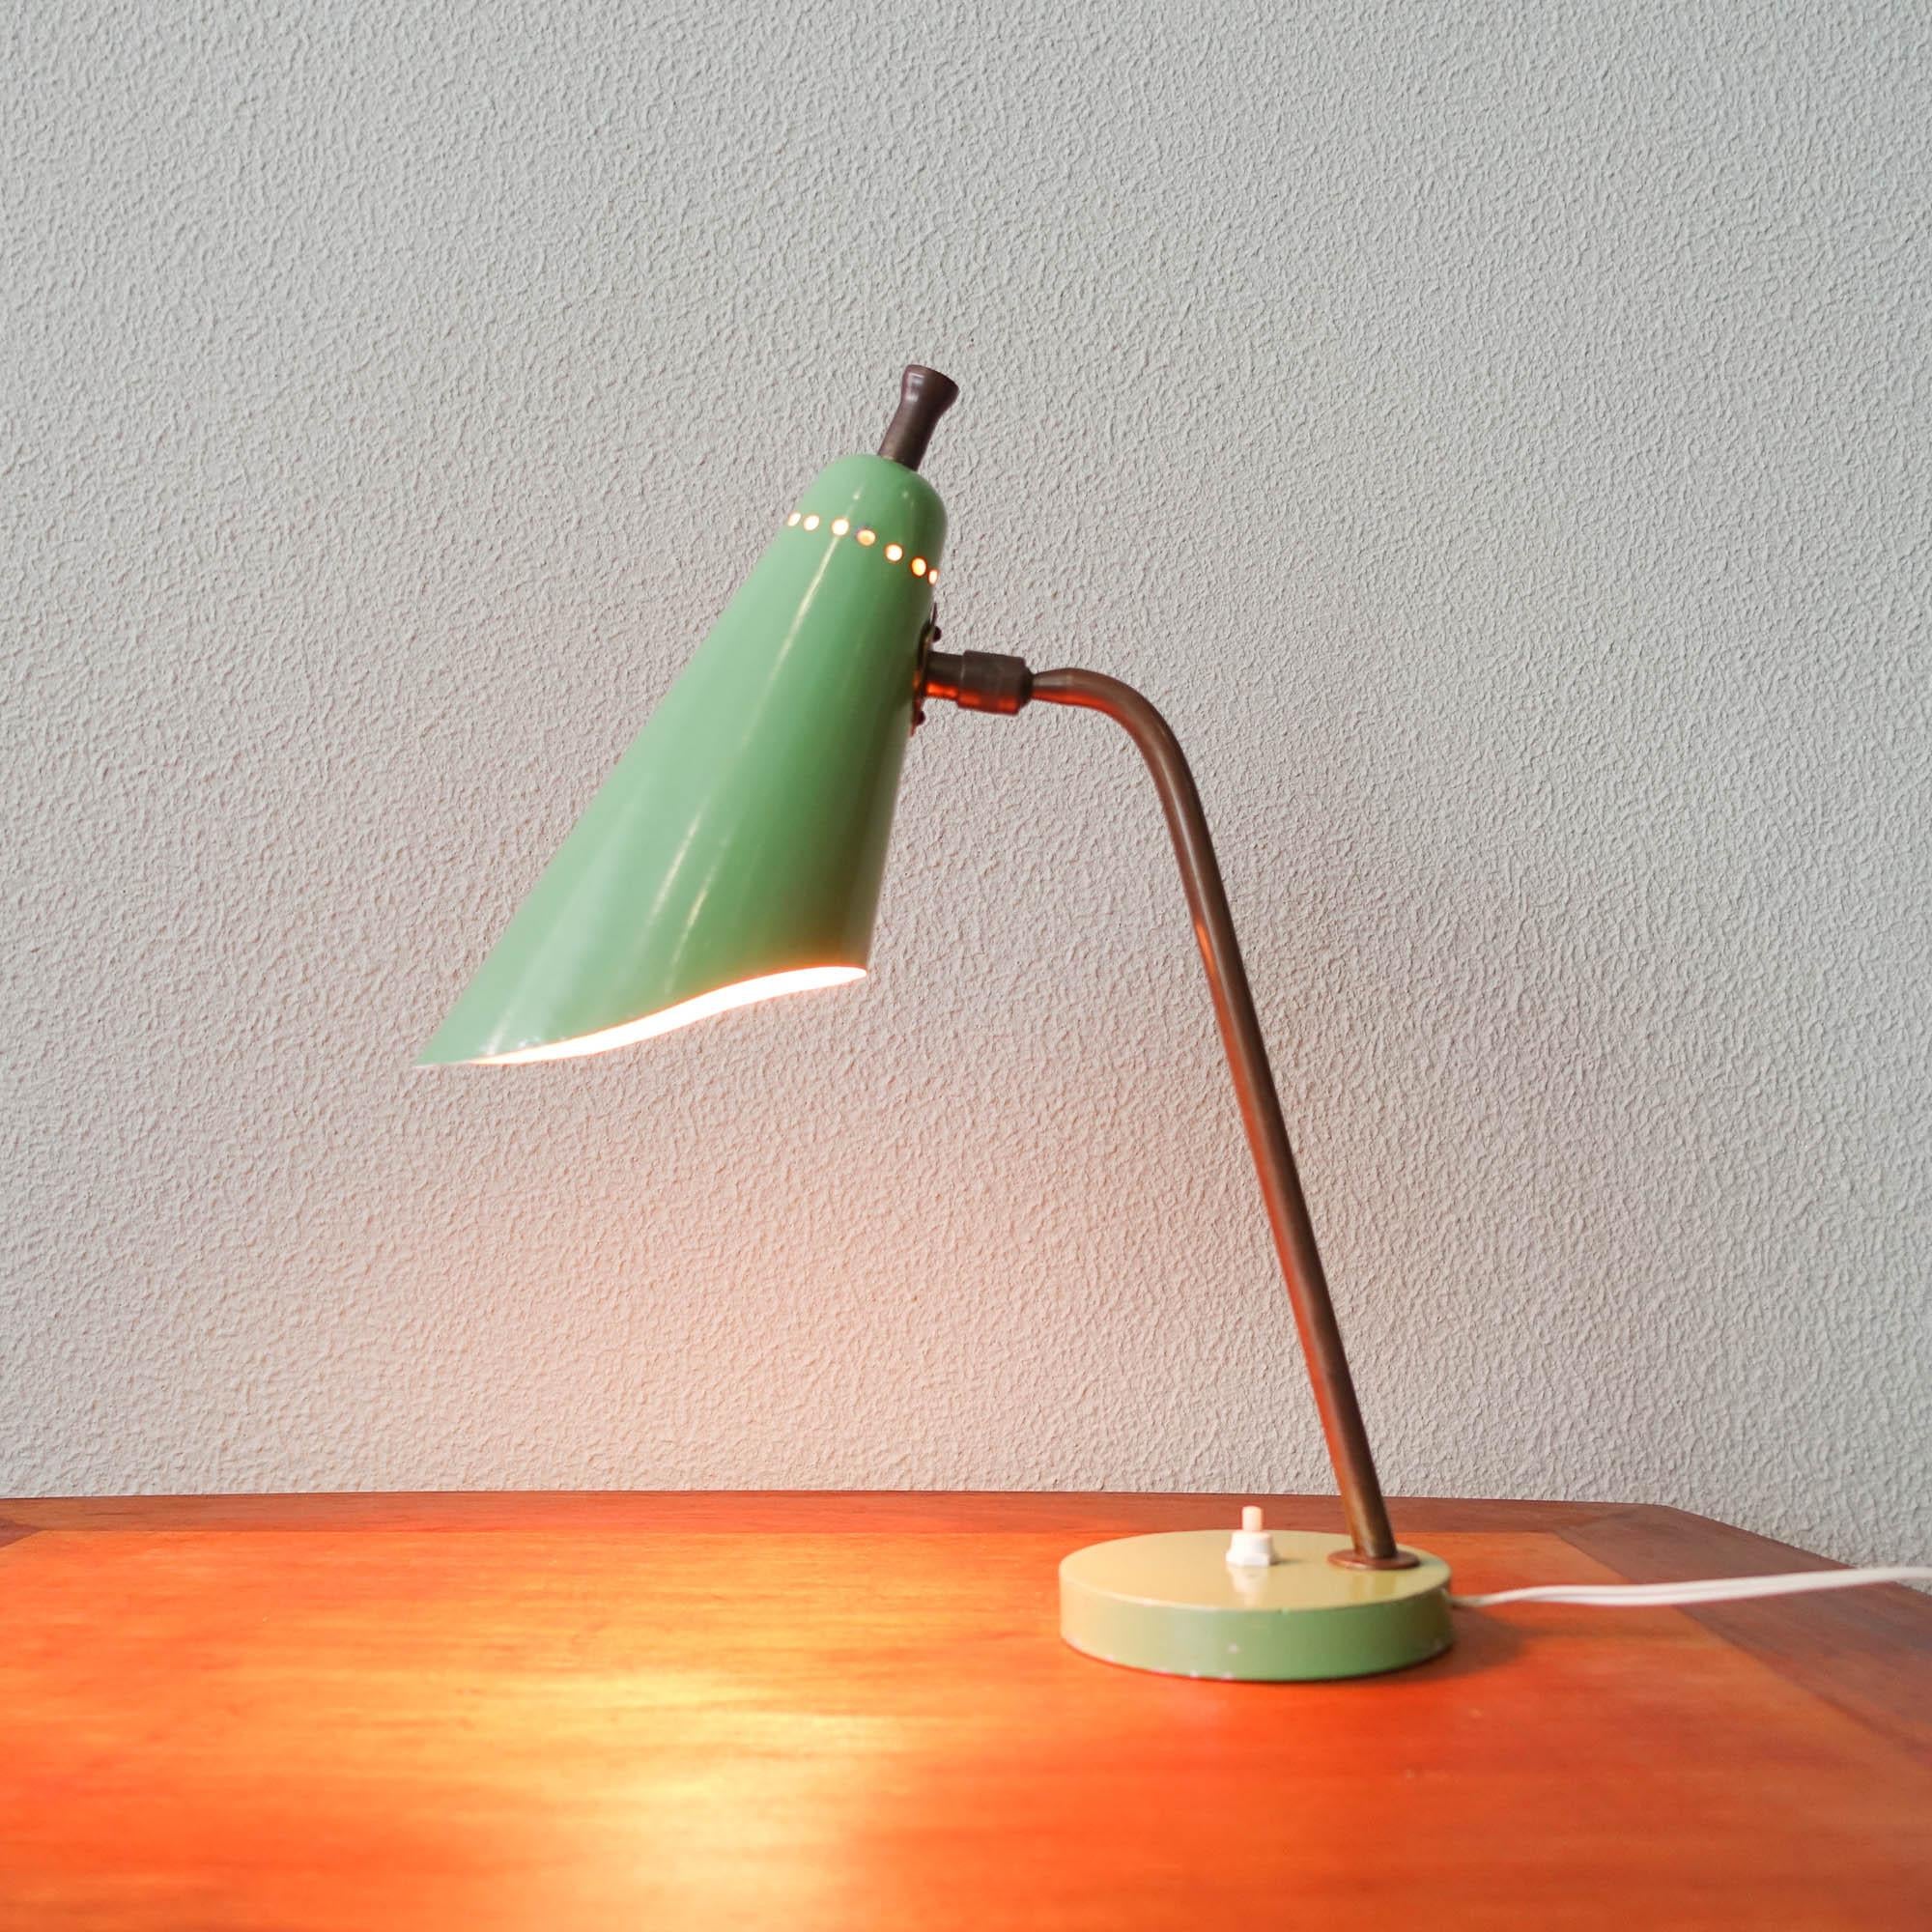 Cette lampe de table du milieu du siècle a été conçue et produite en Italie, dans les années 1950. Il possède une base vert clair où est fixée une tige courbe en laiton. Avec un abat-jour peint en vert clair, un intérieur peint en blanc cassé et une